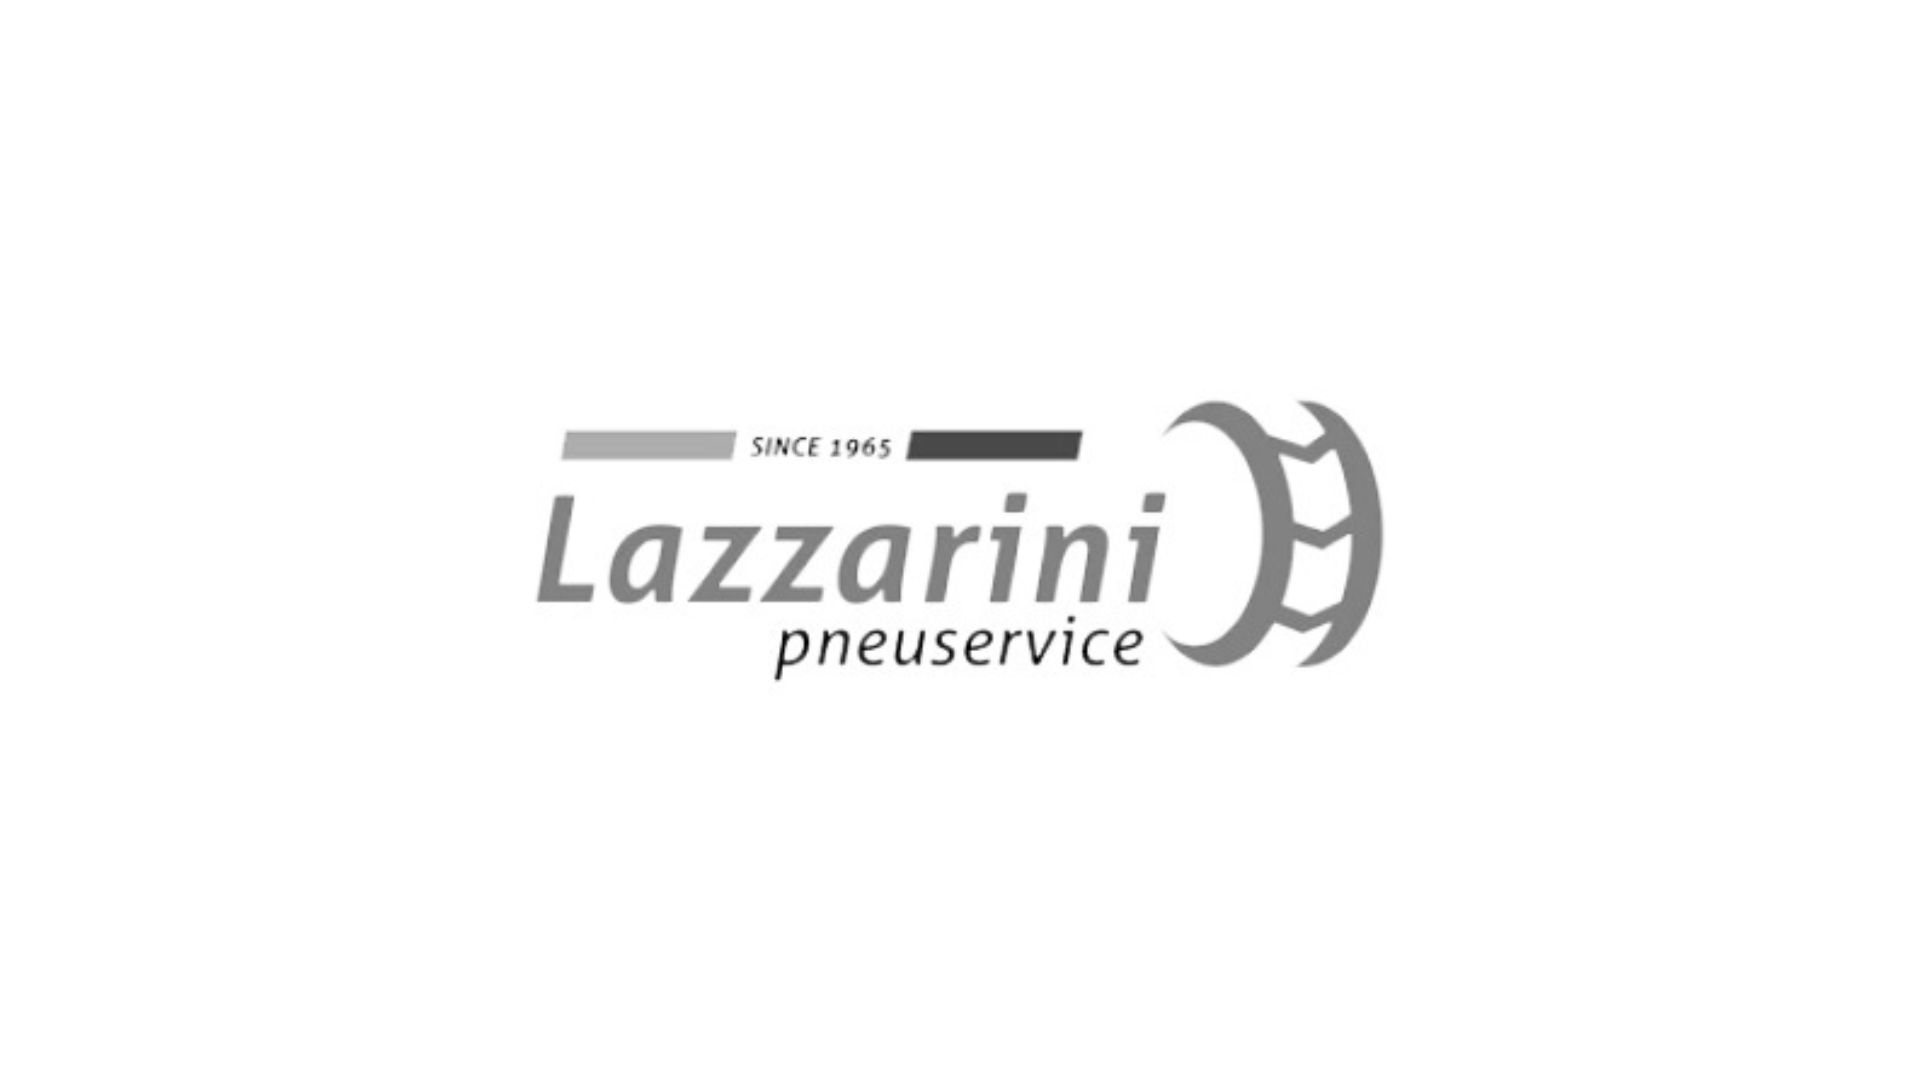 lazzarini-pneuservice